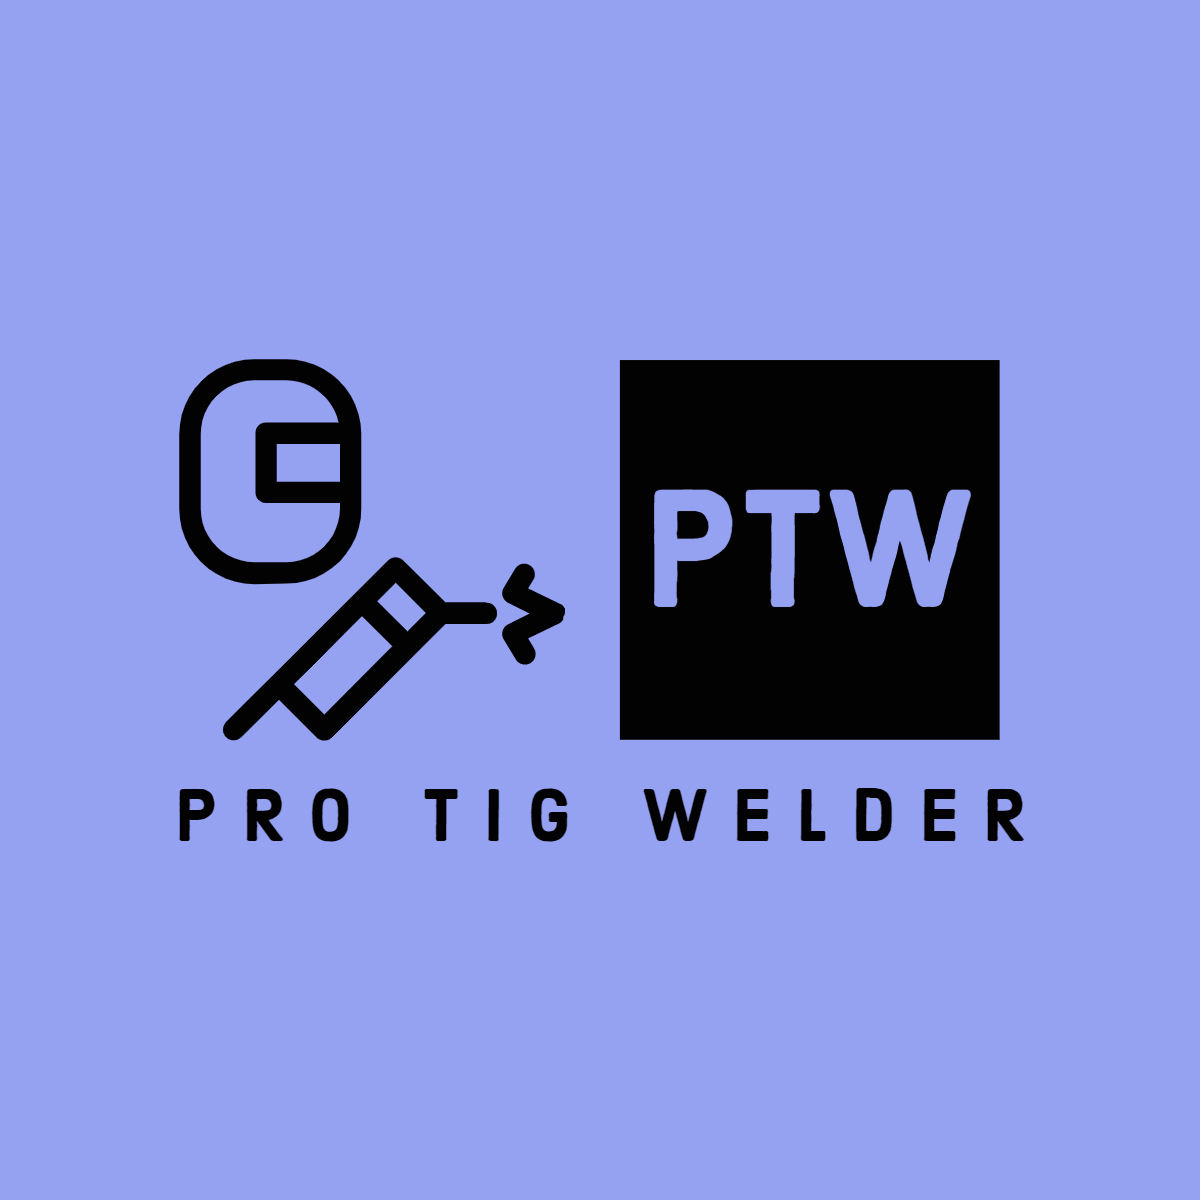 Pro TIG Welders